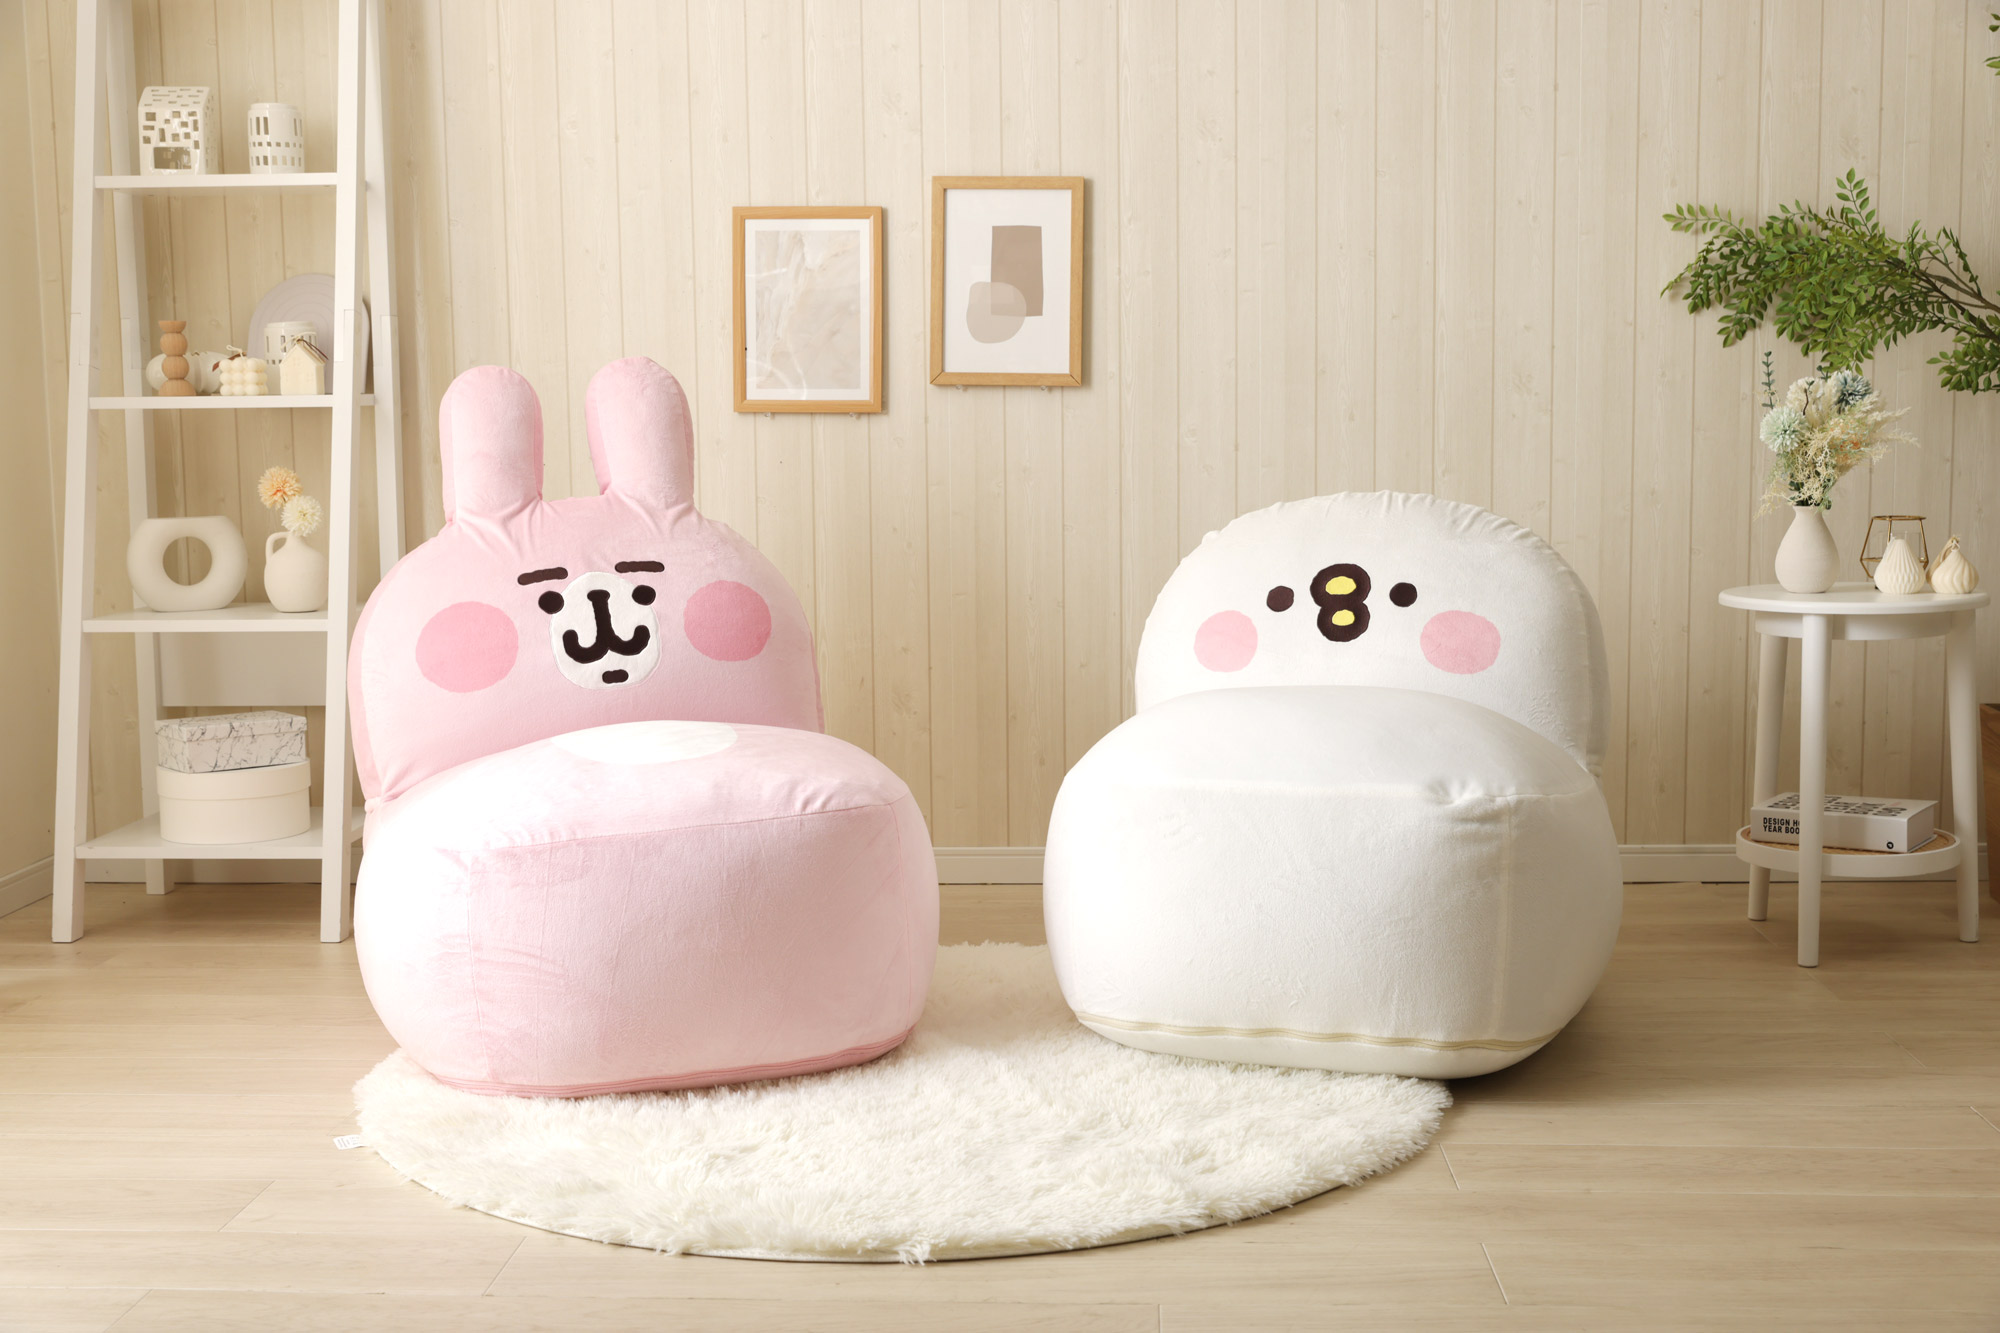 超呆萌「卡娜赫拉」粉紅兔兔和p助沙發椅-療癒預購熱銷中